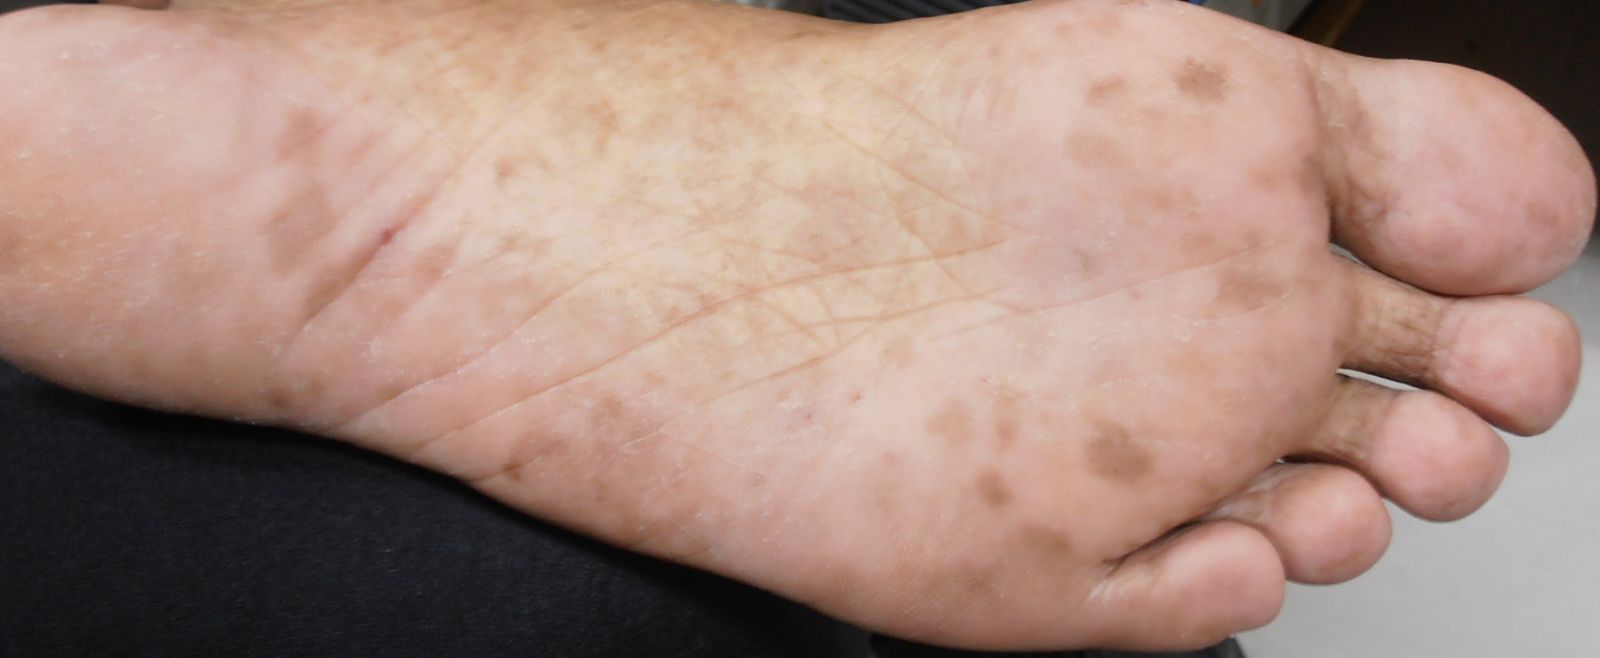 上图:脚底出现多发性黑斑就应该要慎防癌症